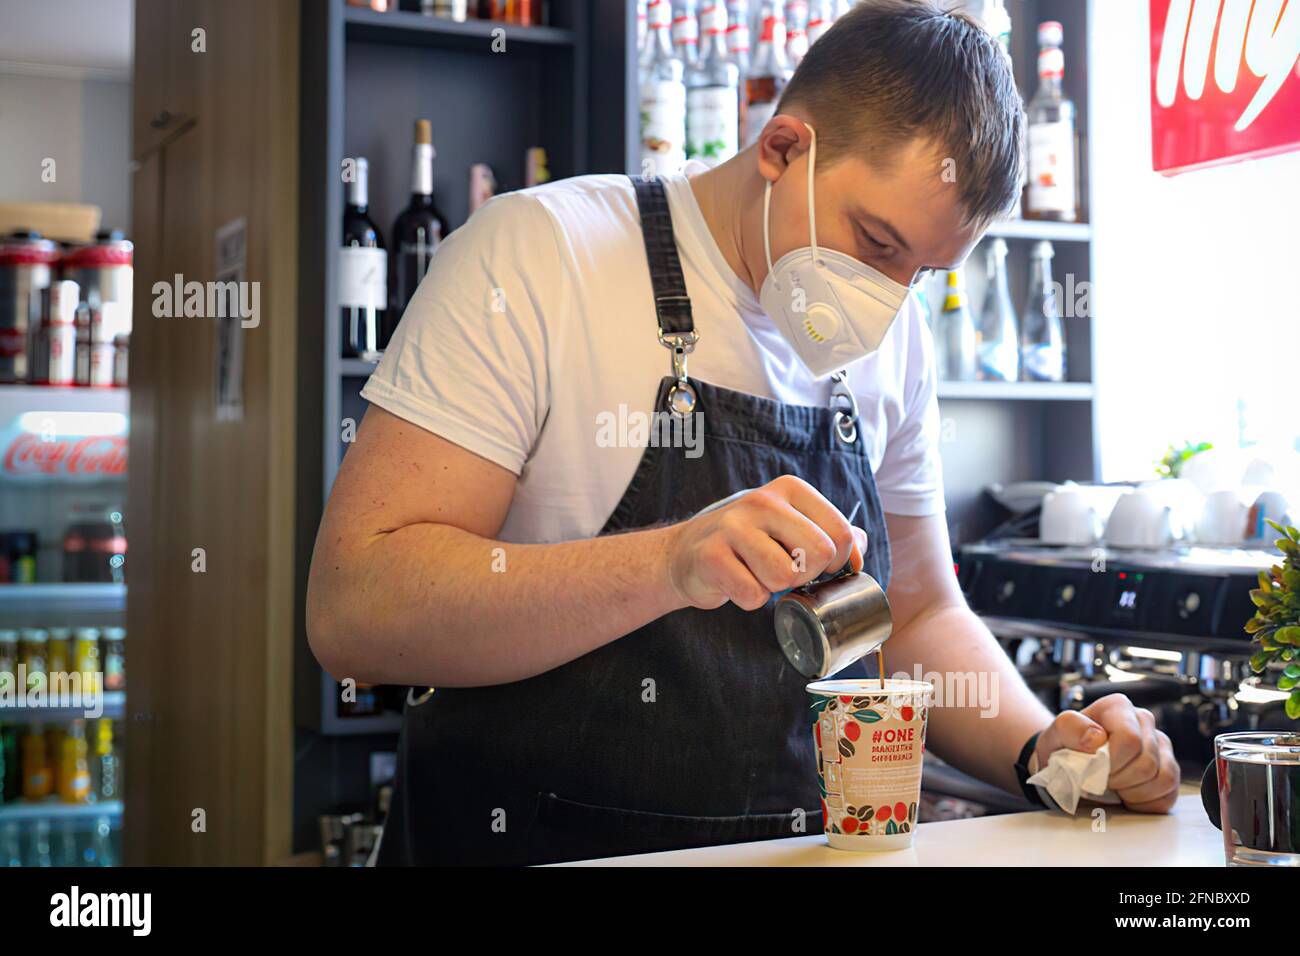 Moscou, Russie – 7 avril 2020 : barman dans un masque médical prépare un café dans un café Banque D'Images